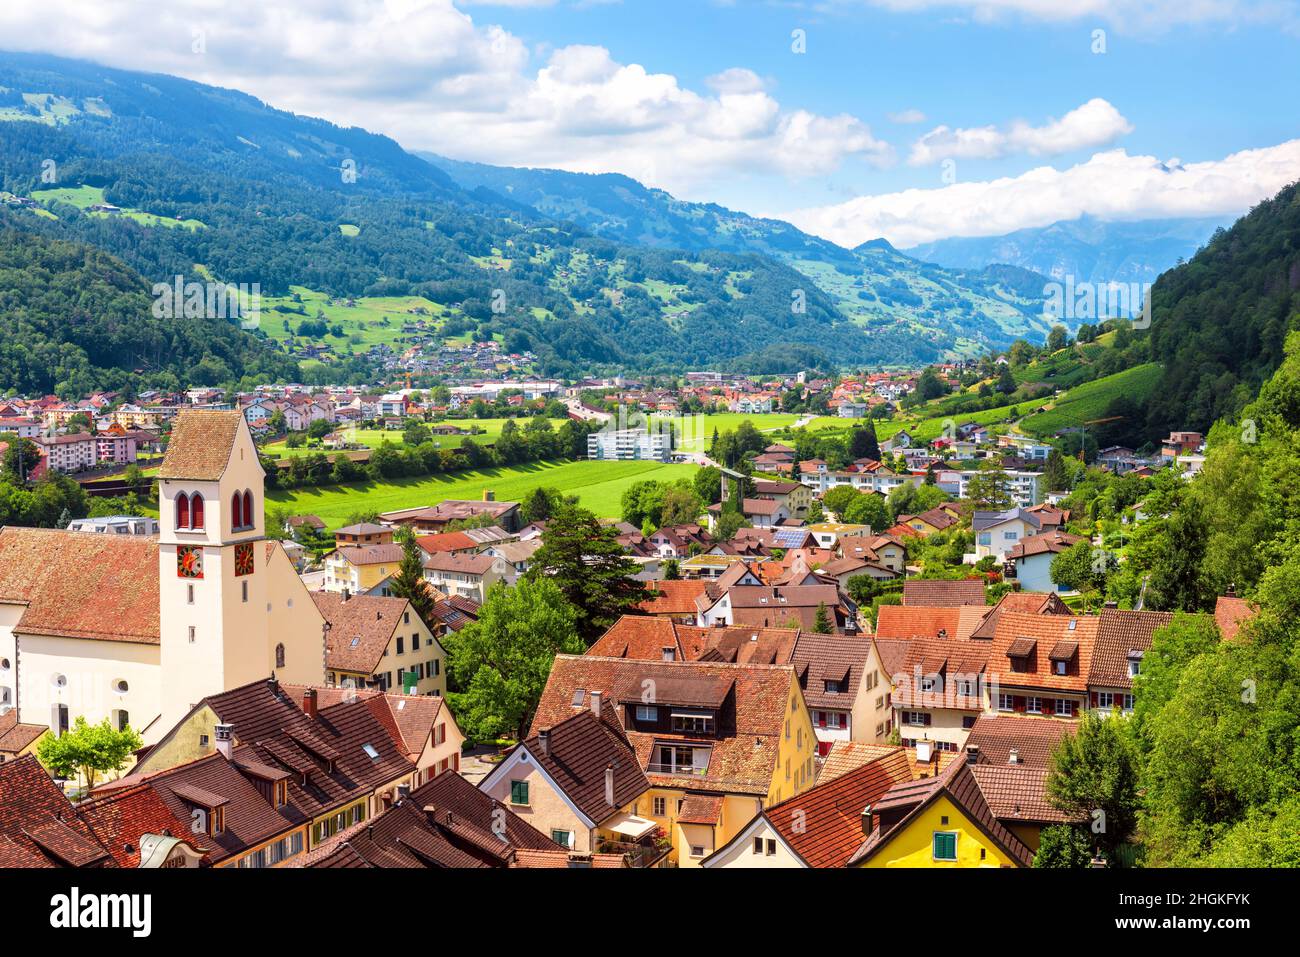 Landschaft mit Bergen, Stadt und Wald, Schweiz, Europa. Panorama von Stadt und Dörfern im grünen Tal, landschaftlich reizvolle Aussicht auf Schweizer Gelände im Sommer. Stockfoto